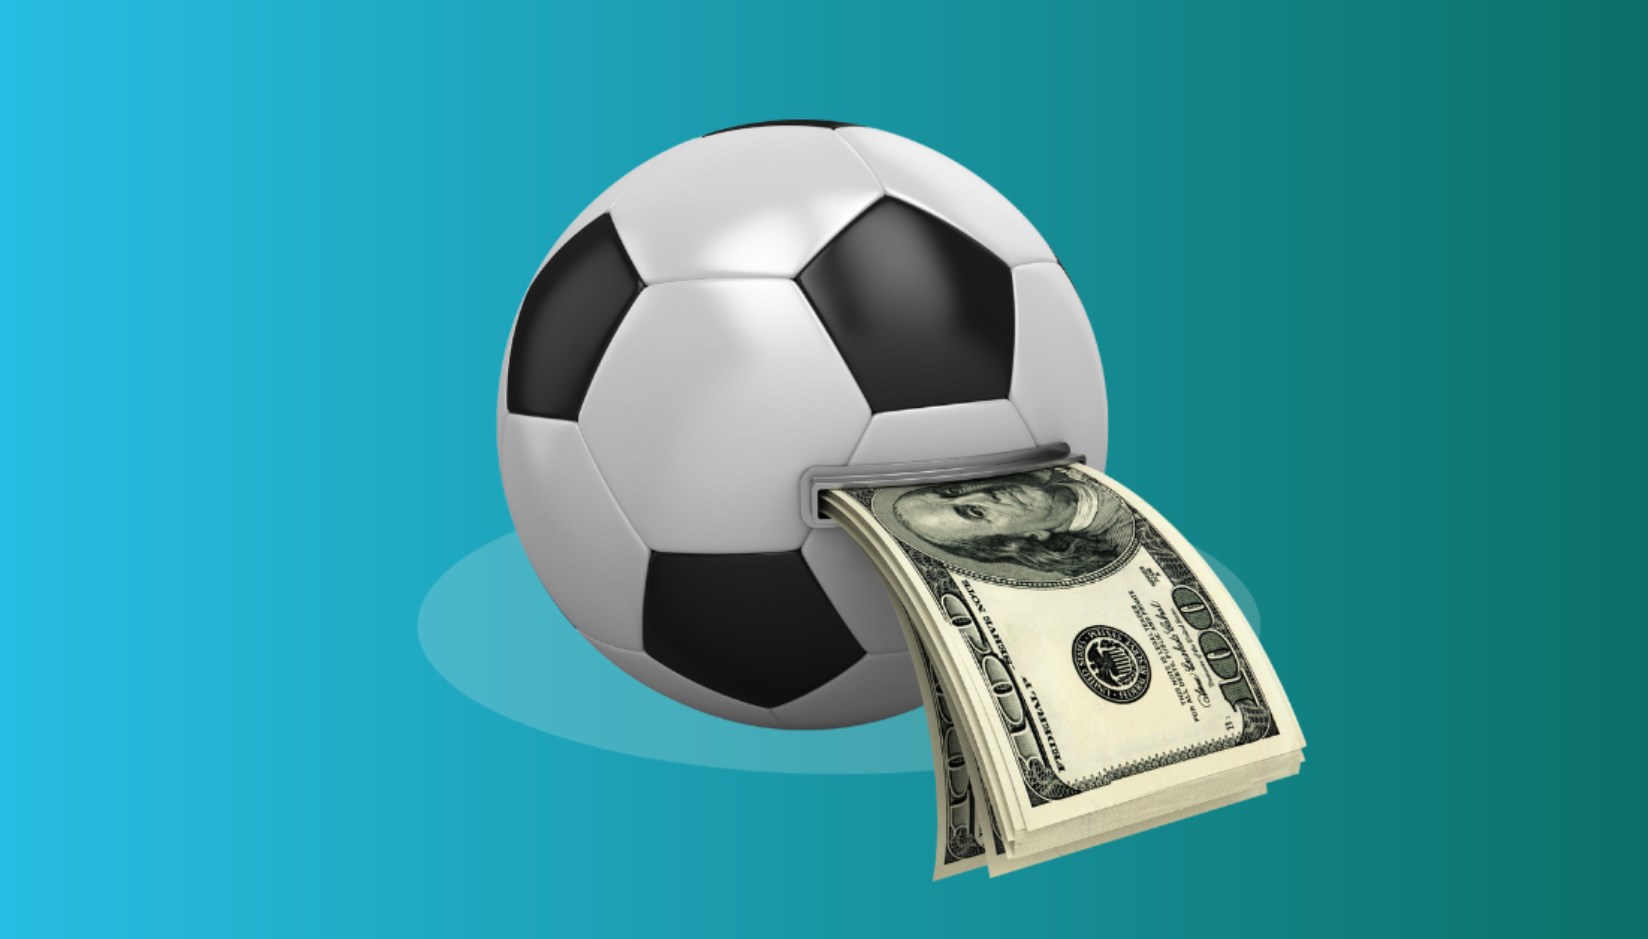 O que precisa para apostar com sucesso no futebol online?